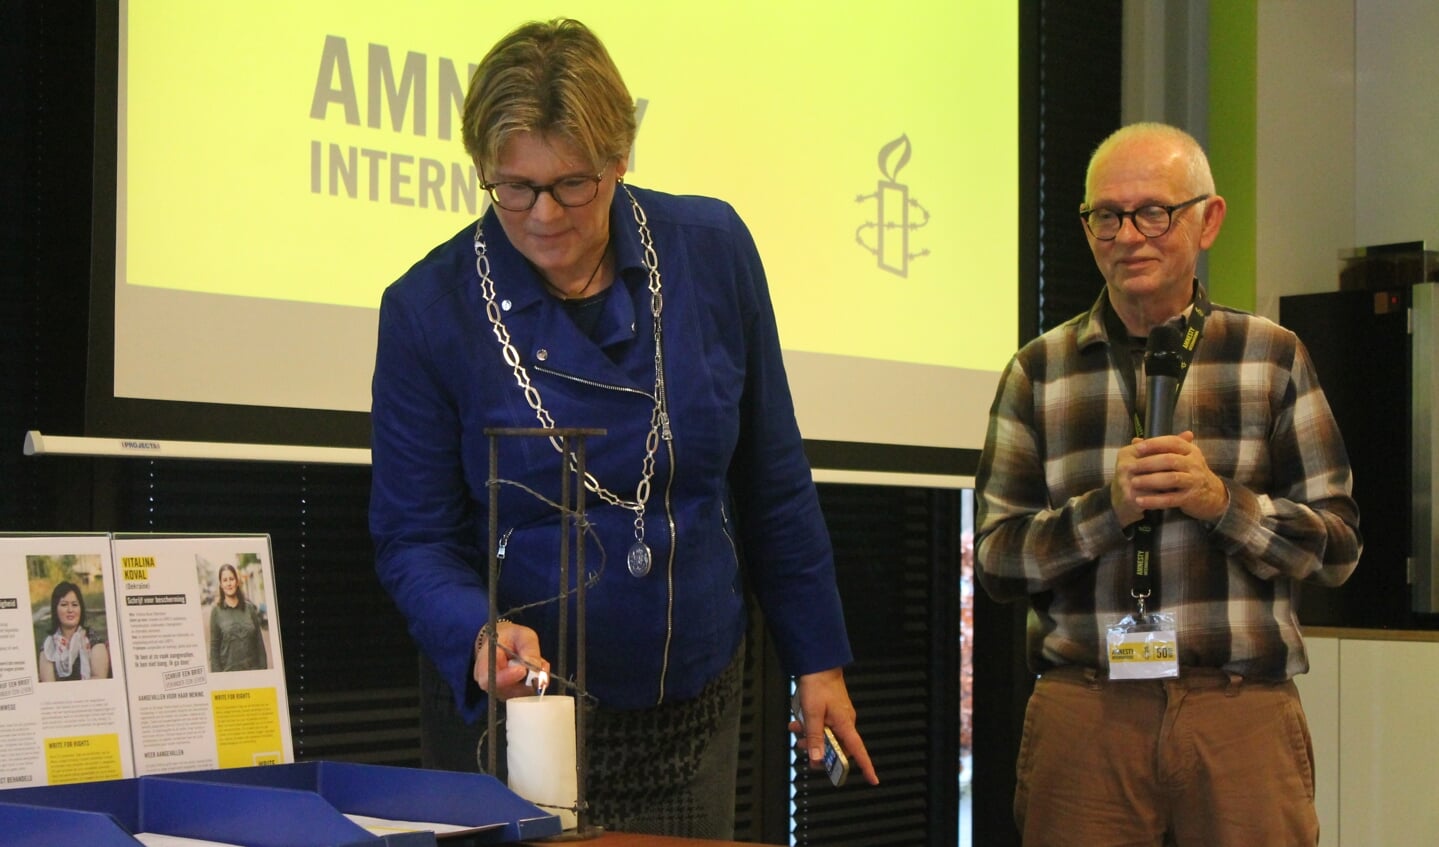 Burgemeester Cnossen en voorzitter Ruud van der Krogt steken de Amnestykaars aan.